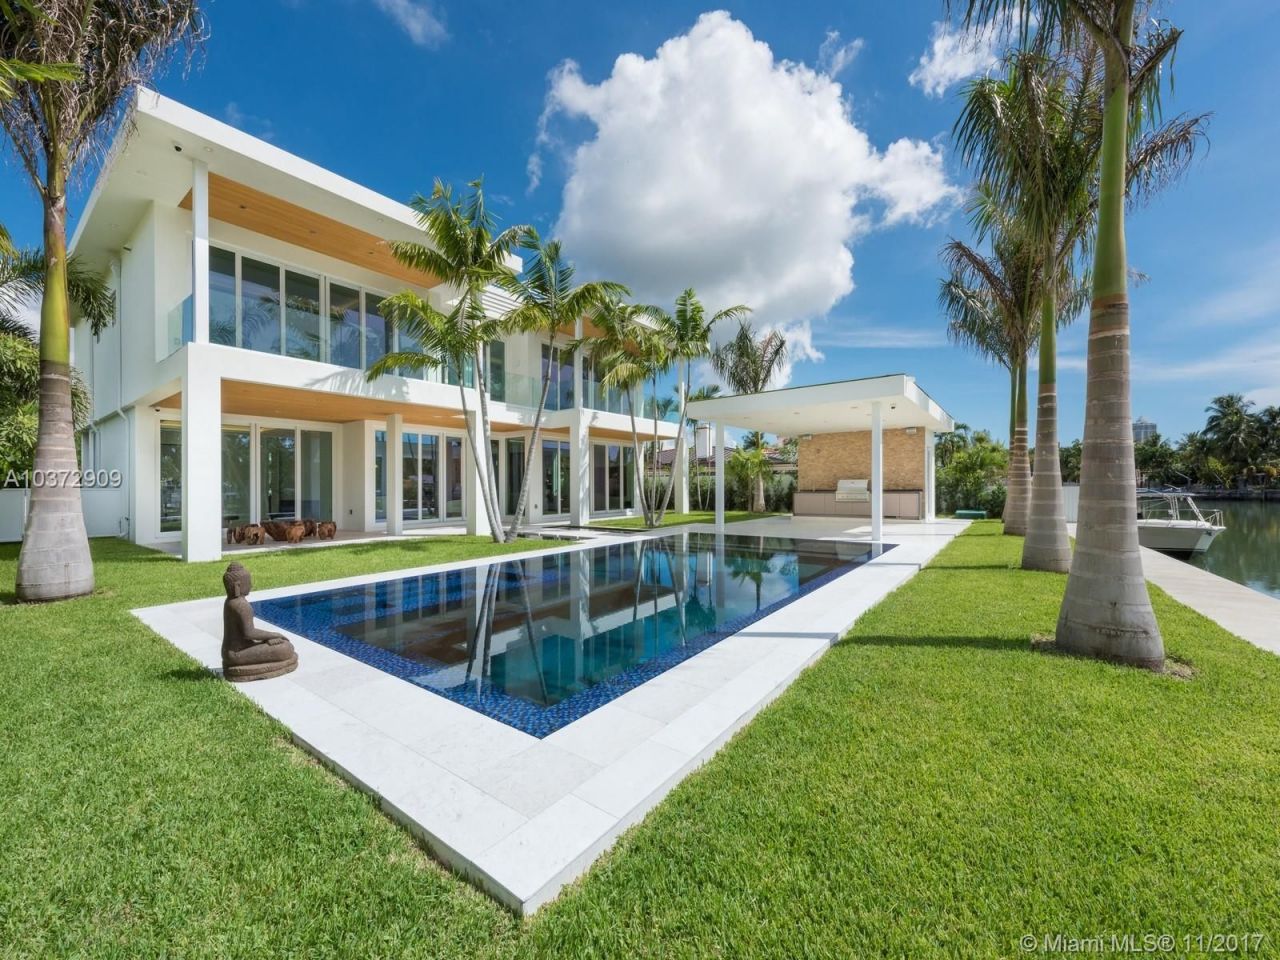 Casa en Miami, Estados Unidos, 600 m2 - imagen 1